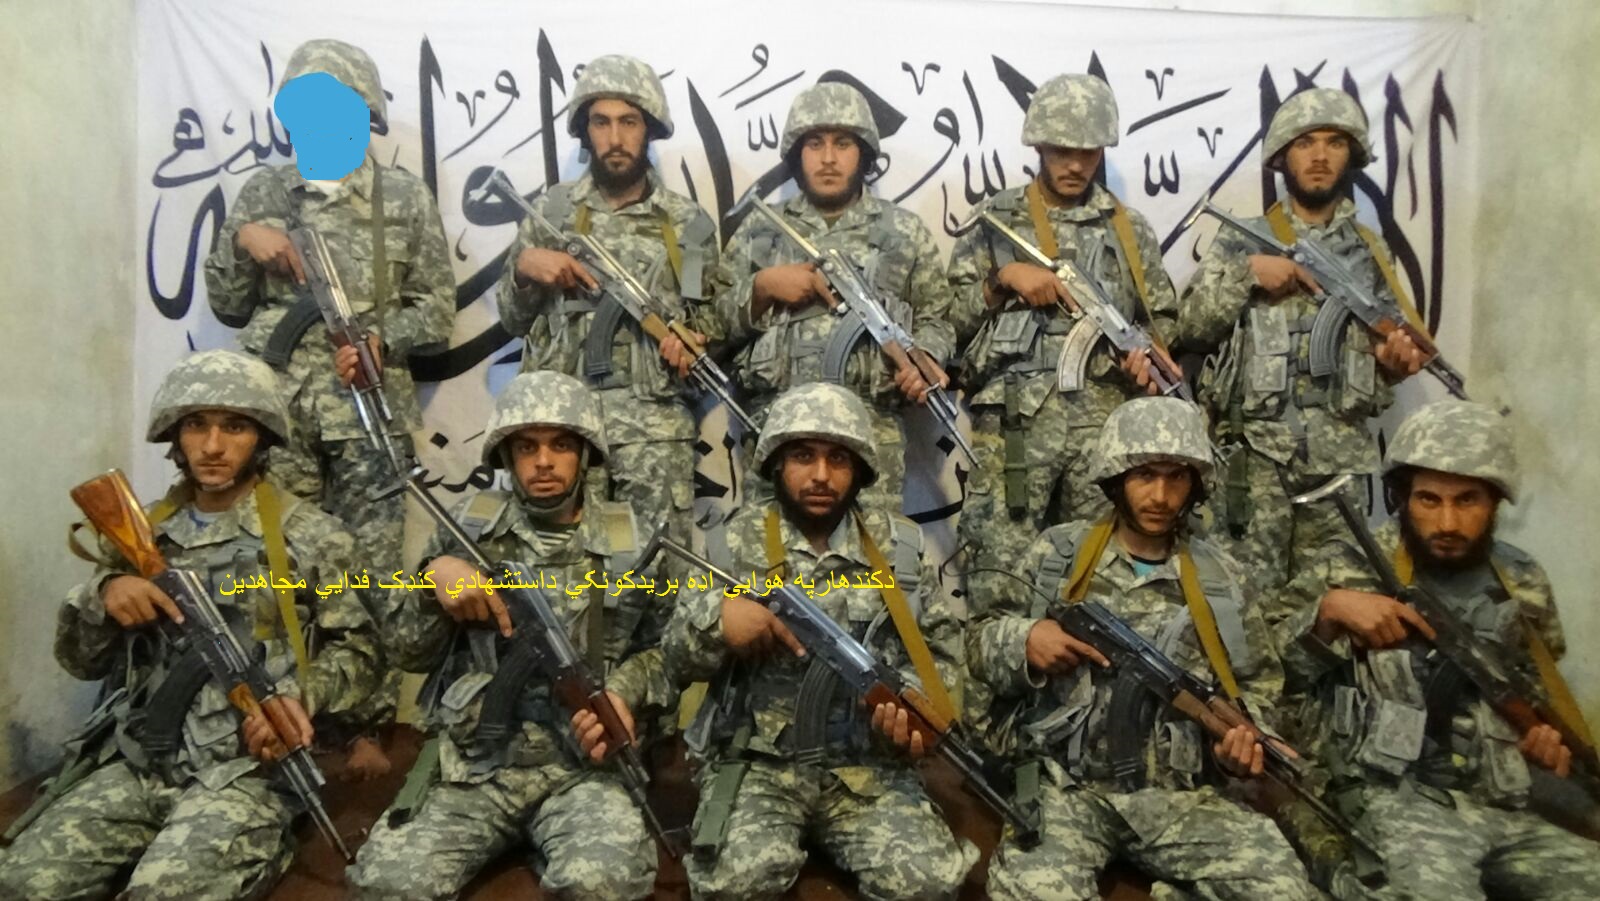 Taliban-Kandahar-suicide-assault-team-2